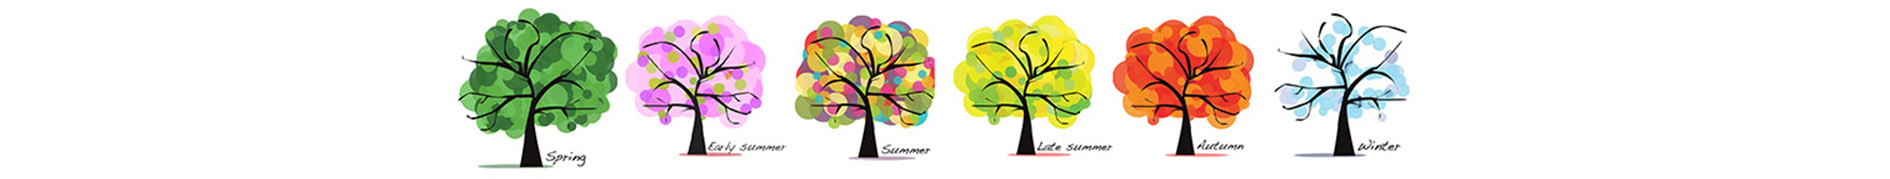 seasonal trees sketch